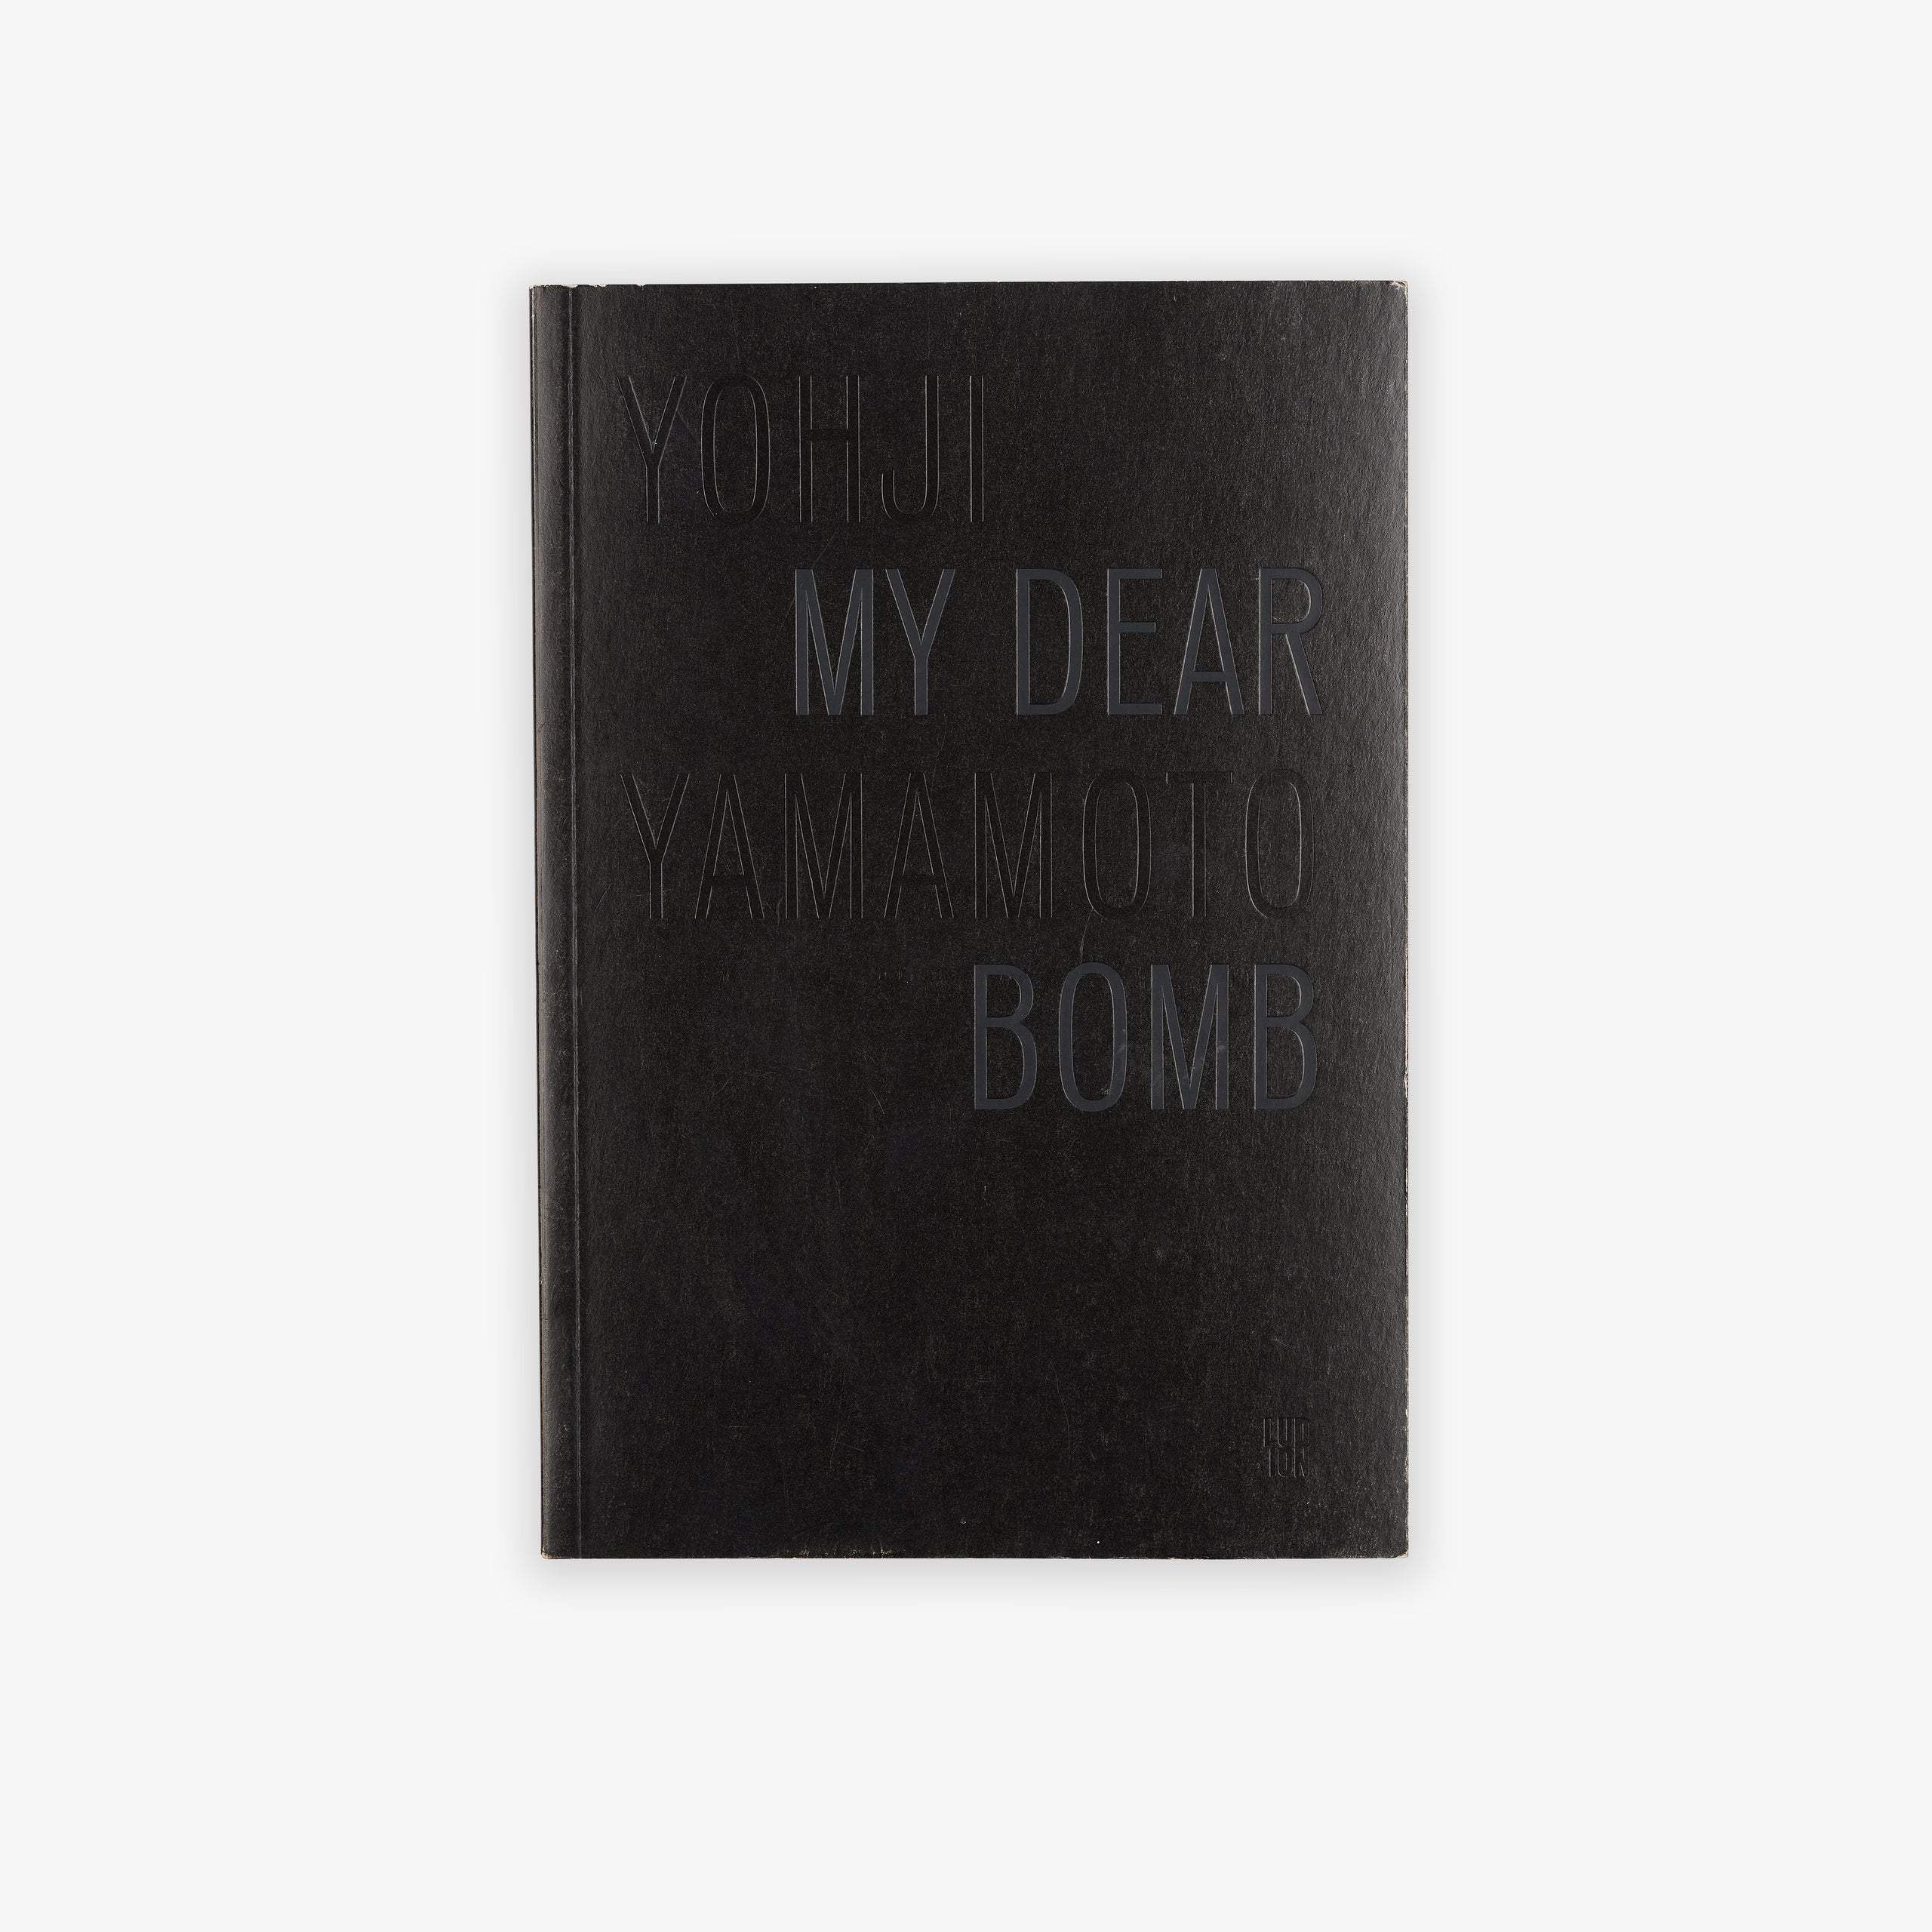 My Dear Bomb by Yohji Yamamoto